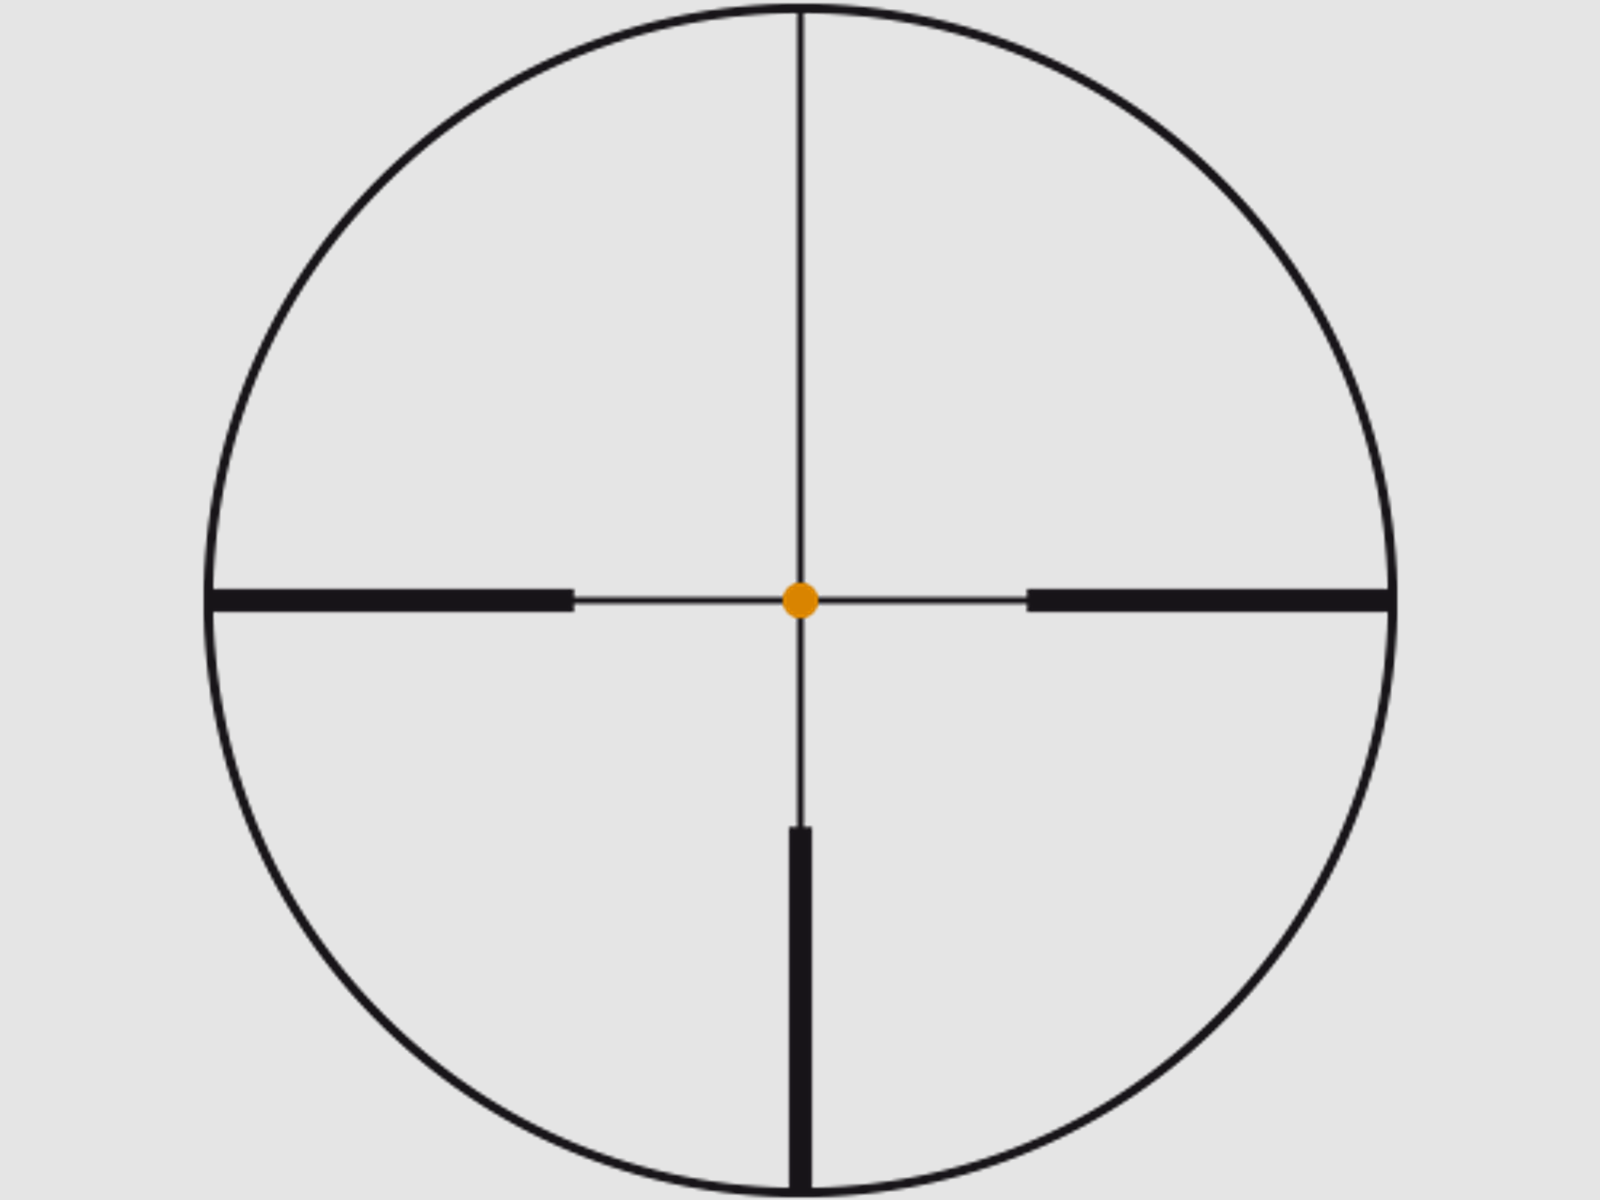 SWAROVSKI Zielfernrohr mit Leuchtabsehen 3,5-28x50 P Z8i L (30mm) Abs. 4A-I/4W-I/BRX-i